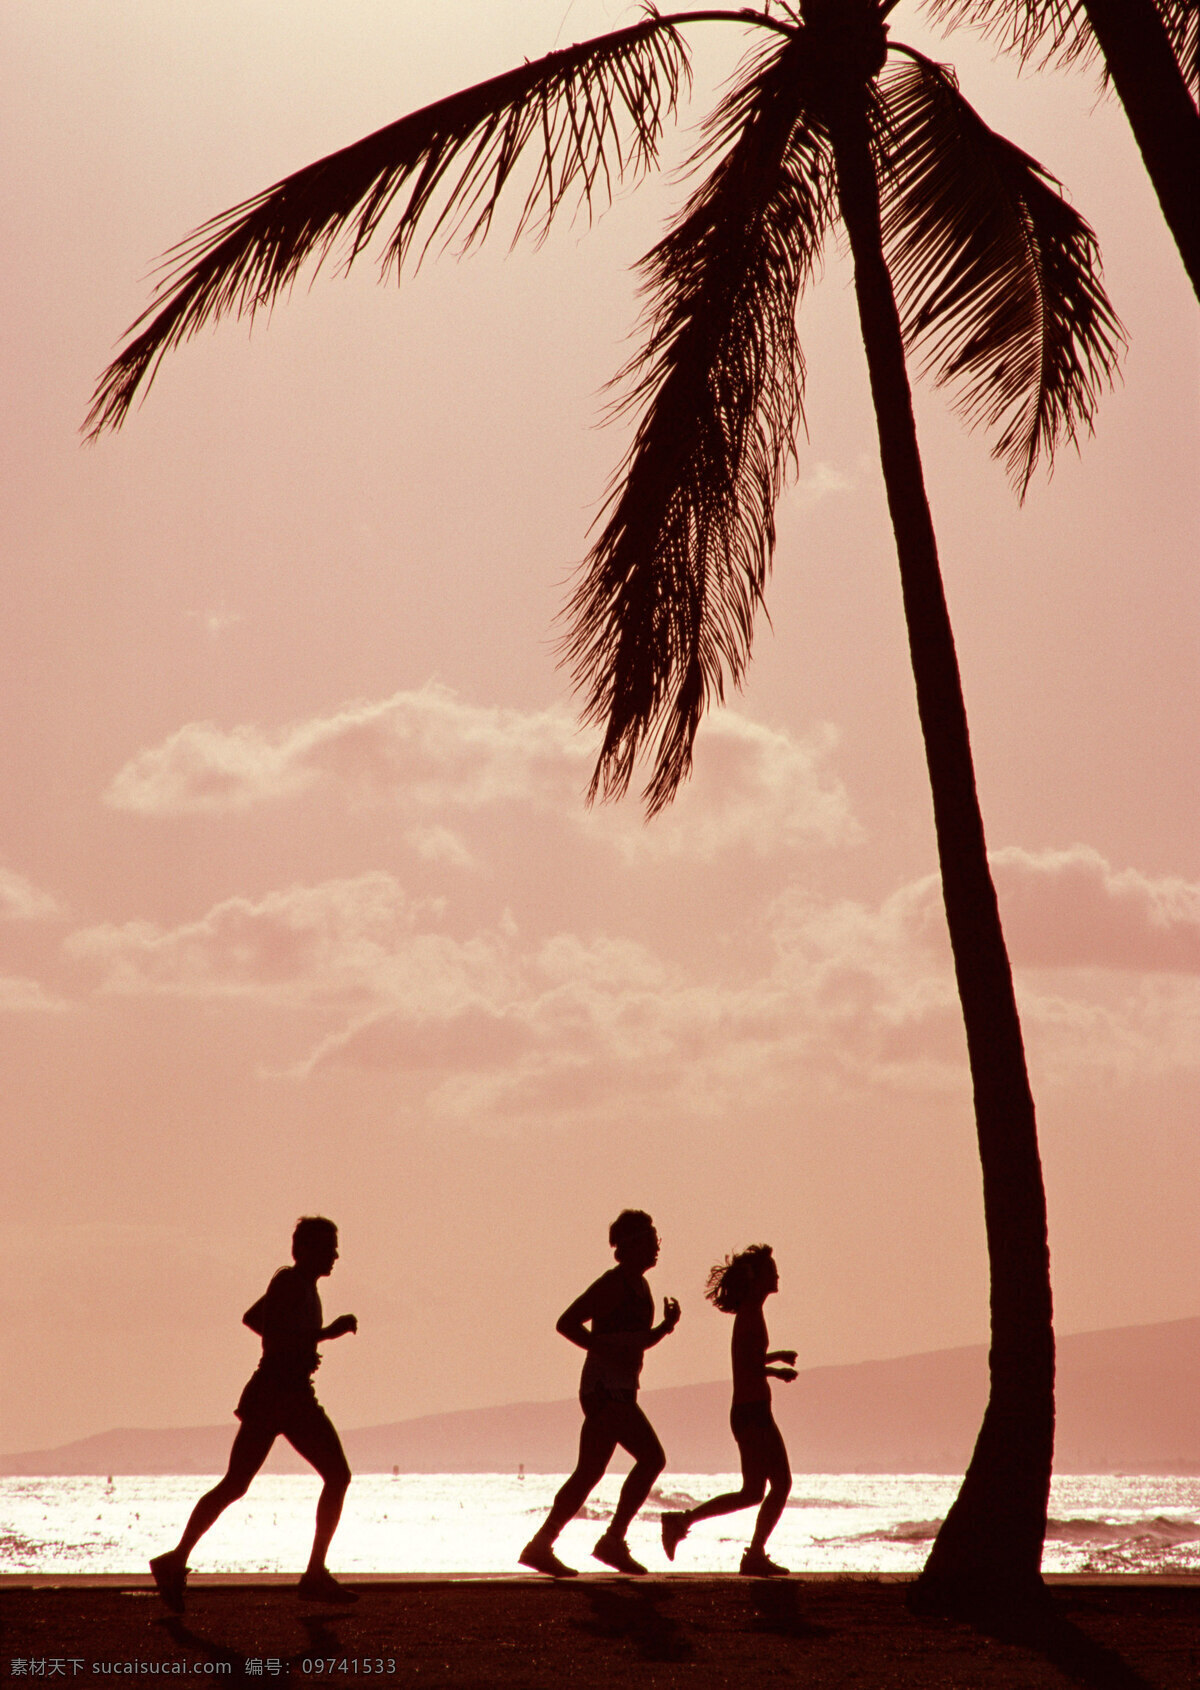 高清 海滩 黄昏 美女 男人 跑步 人 夏威夷 夏威夷海滩 椰子树 黄昏夜景 自然风景 自然景观 psd源文件